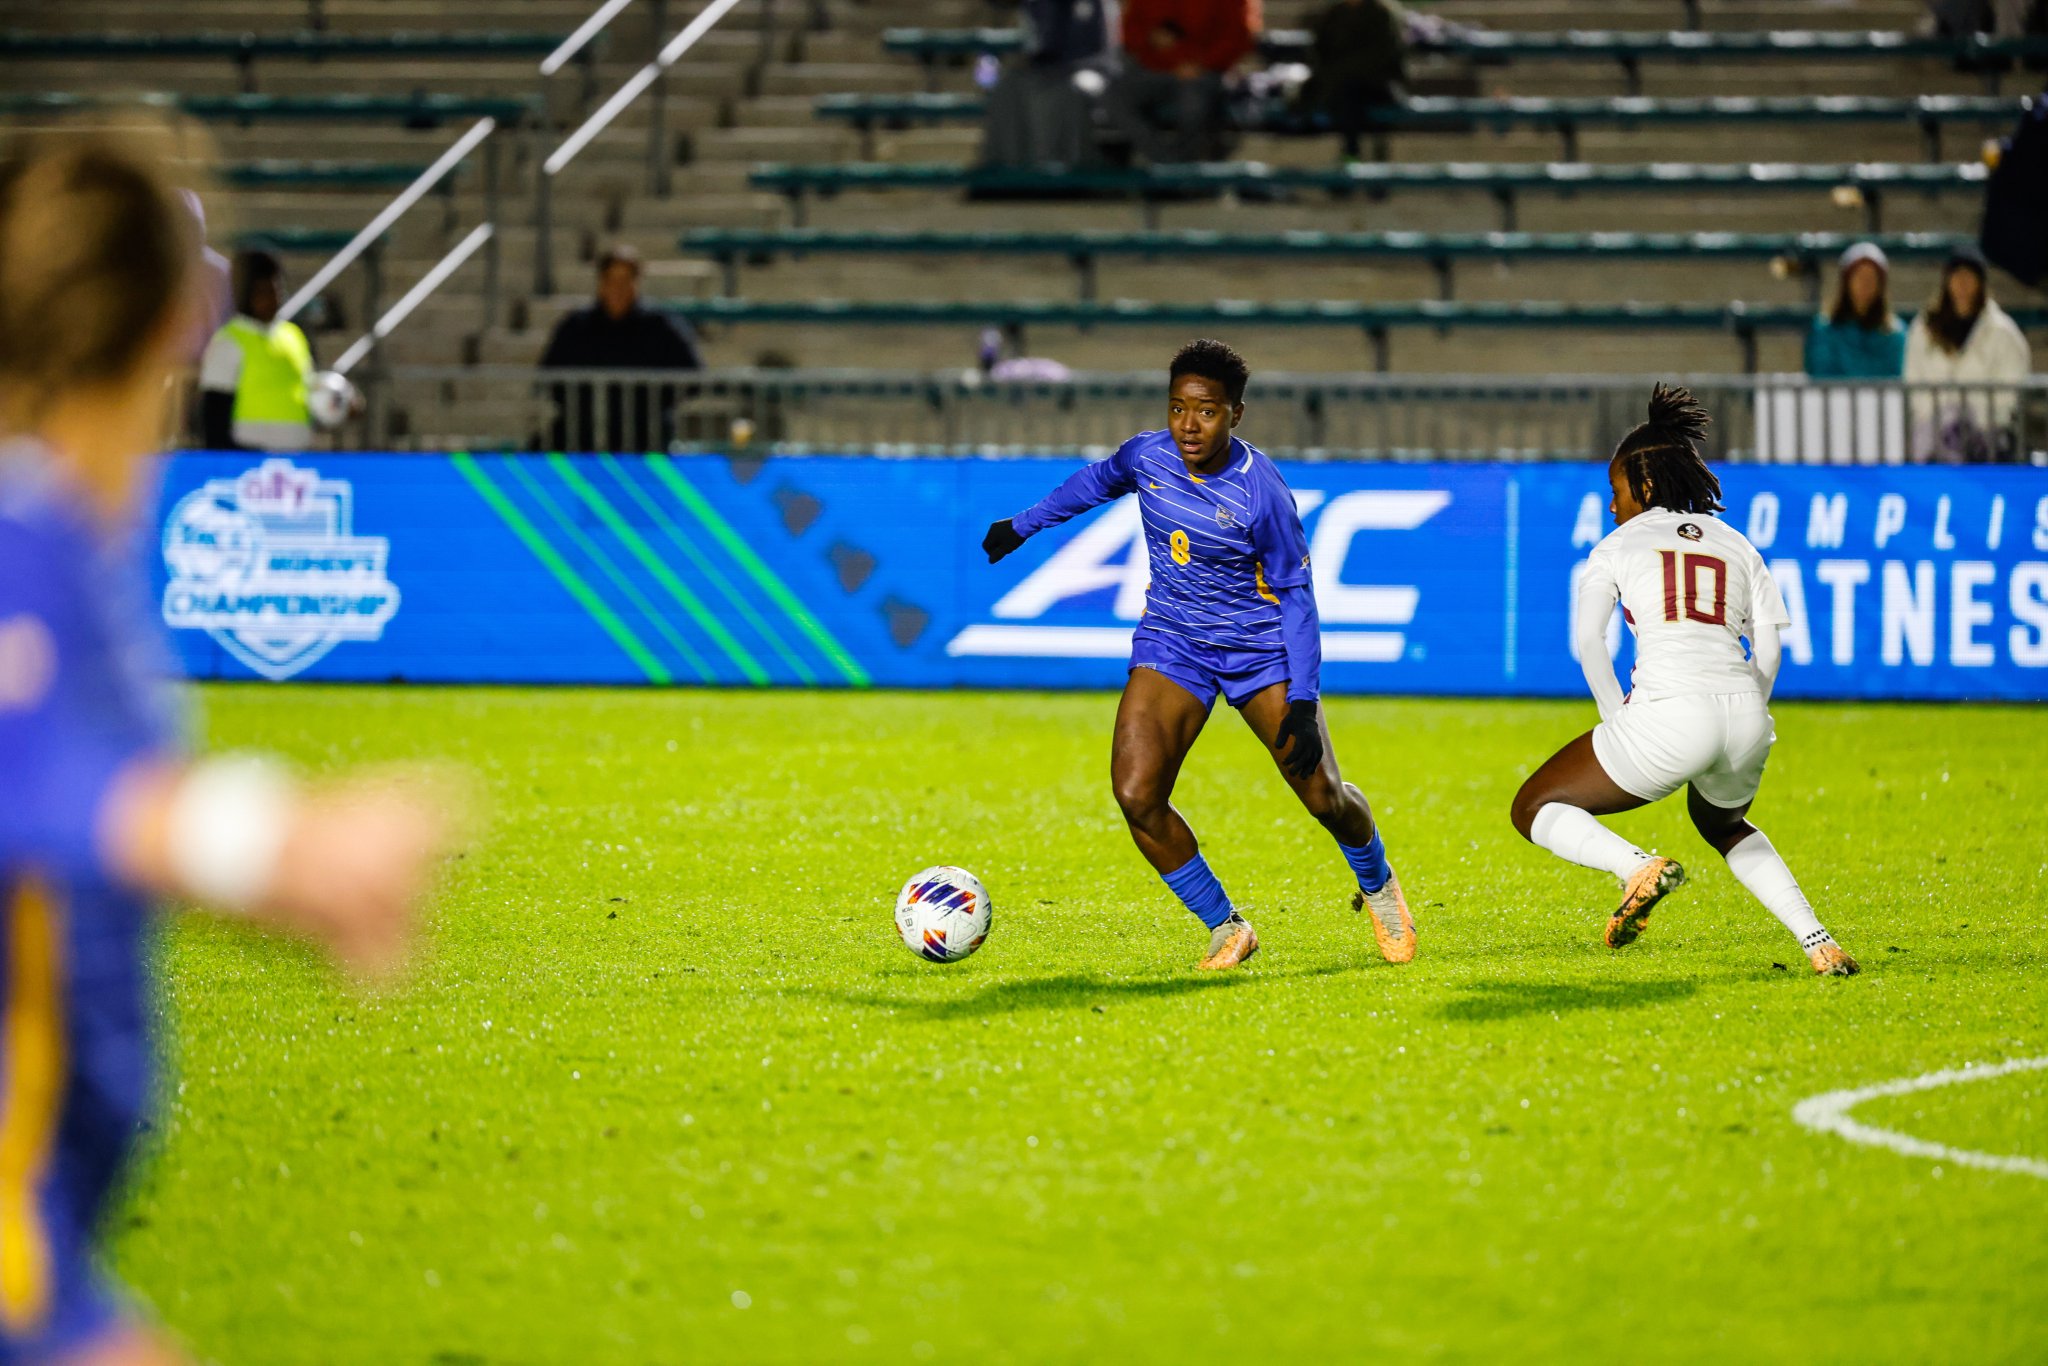 Pitt women's soccer midfielder Deborah Abiodun vs. Florida State